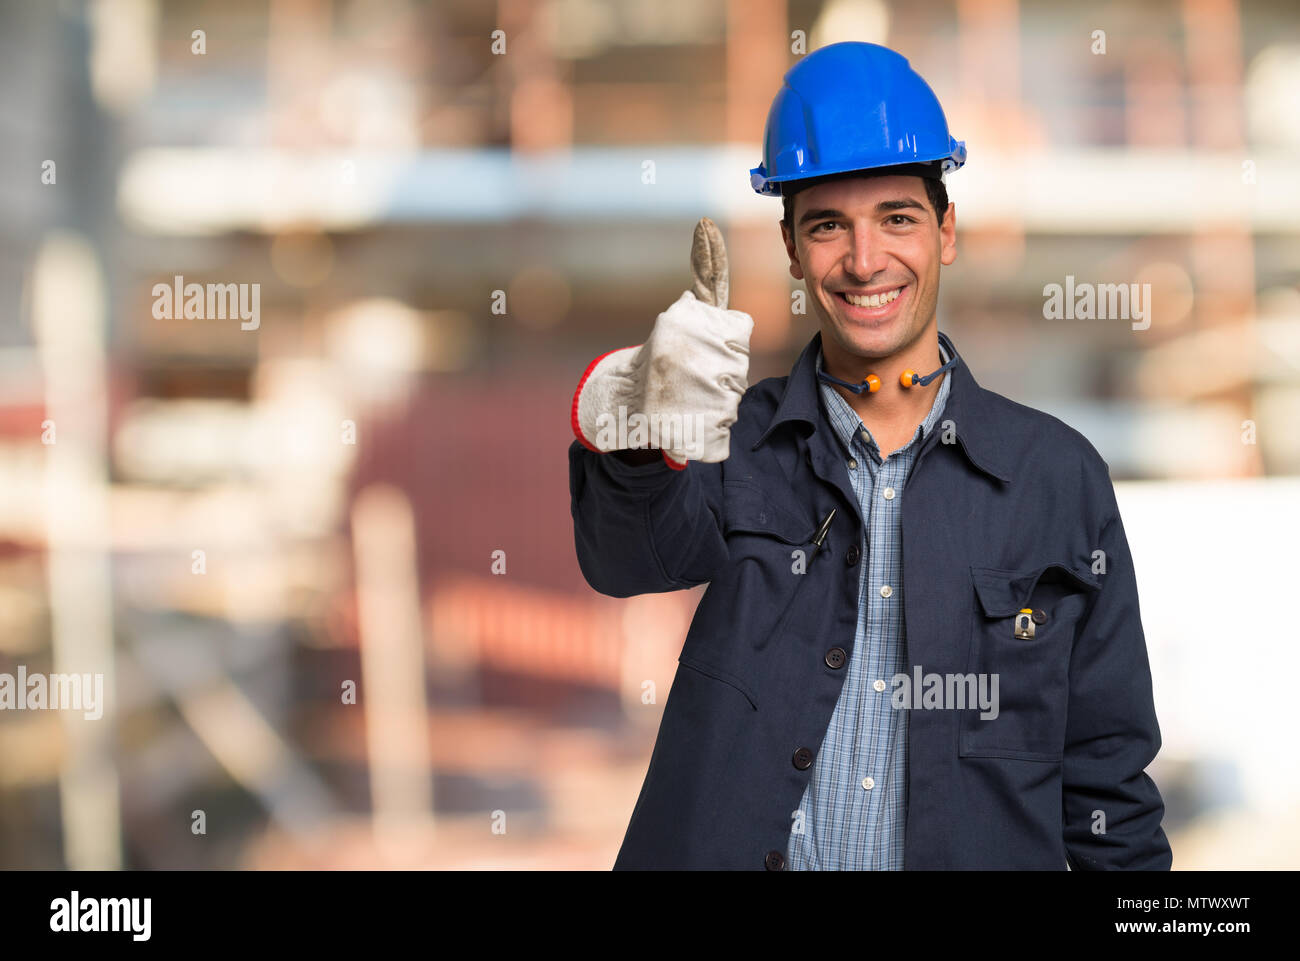 Улыбающийся рабочий. Рабочий улыбается. Улыбающийся работник. Фотосессия девушка в строительной каске. Хорошее настроение стройка.